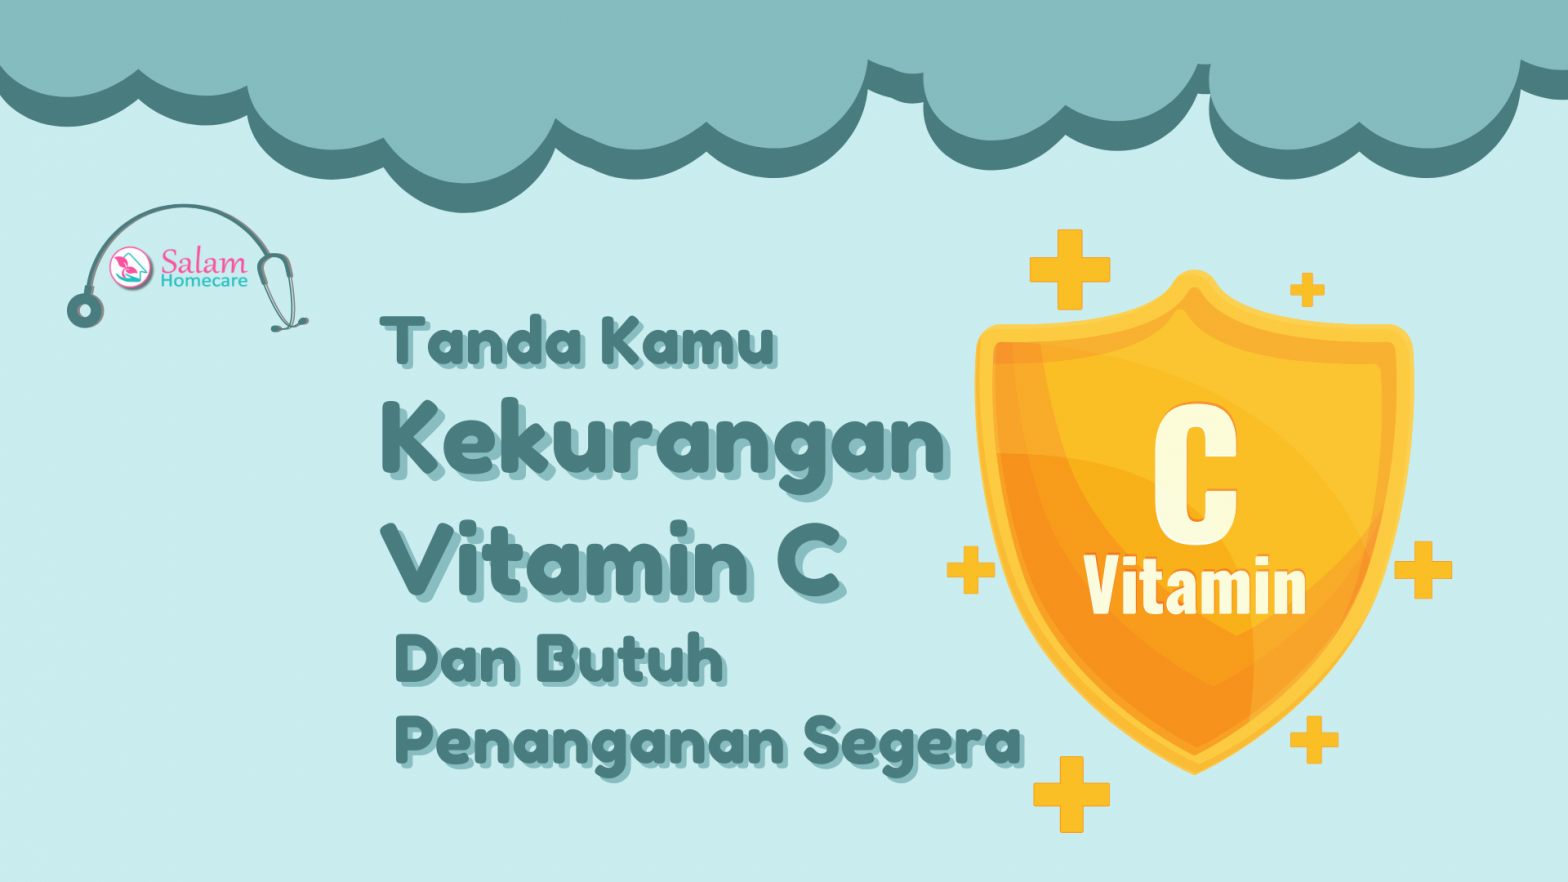 Tanda Kamu Kekurangan Vitamin C dan Butuh Penanganan Segera